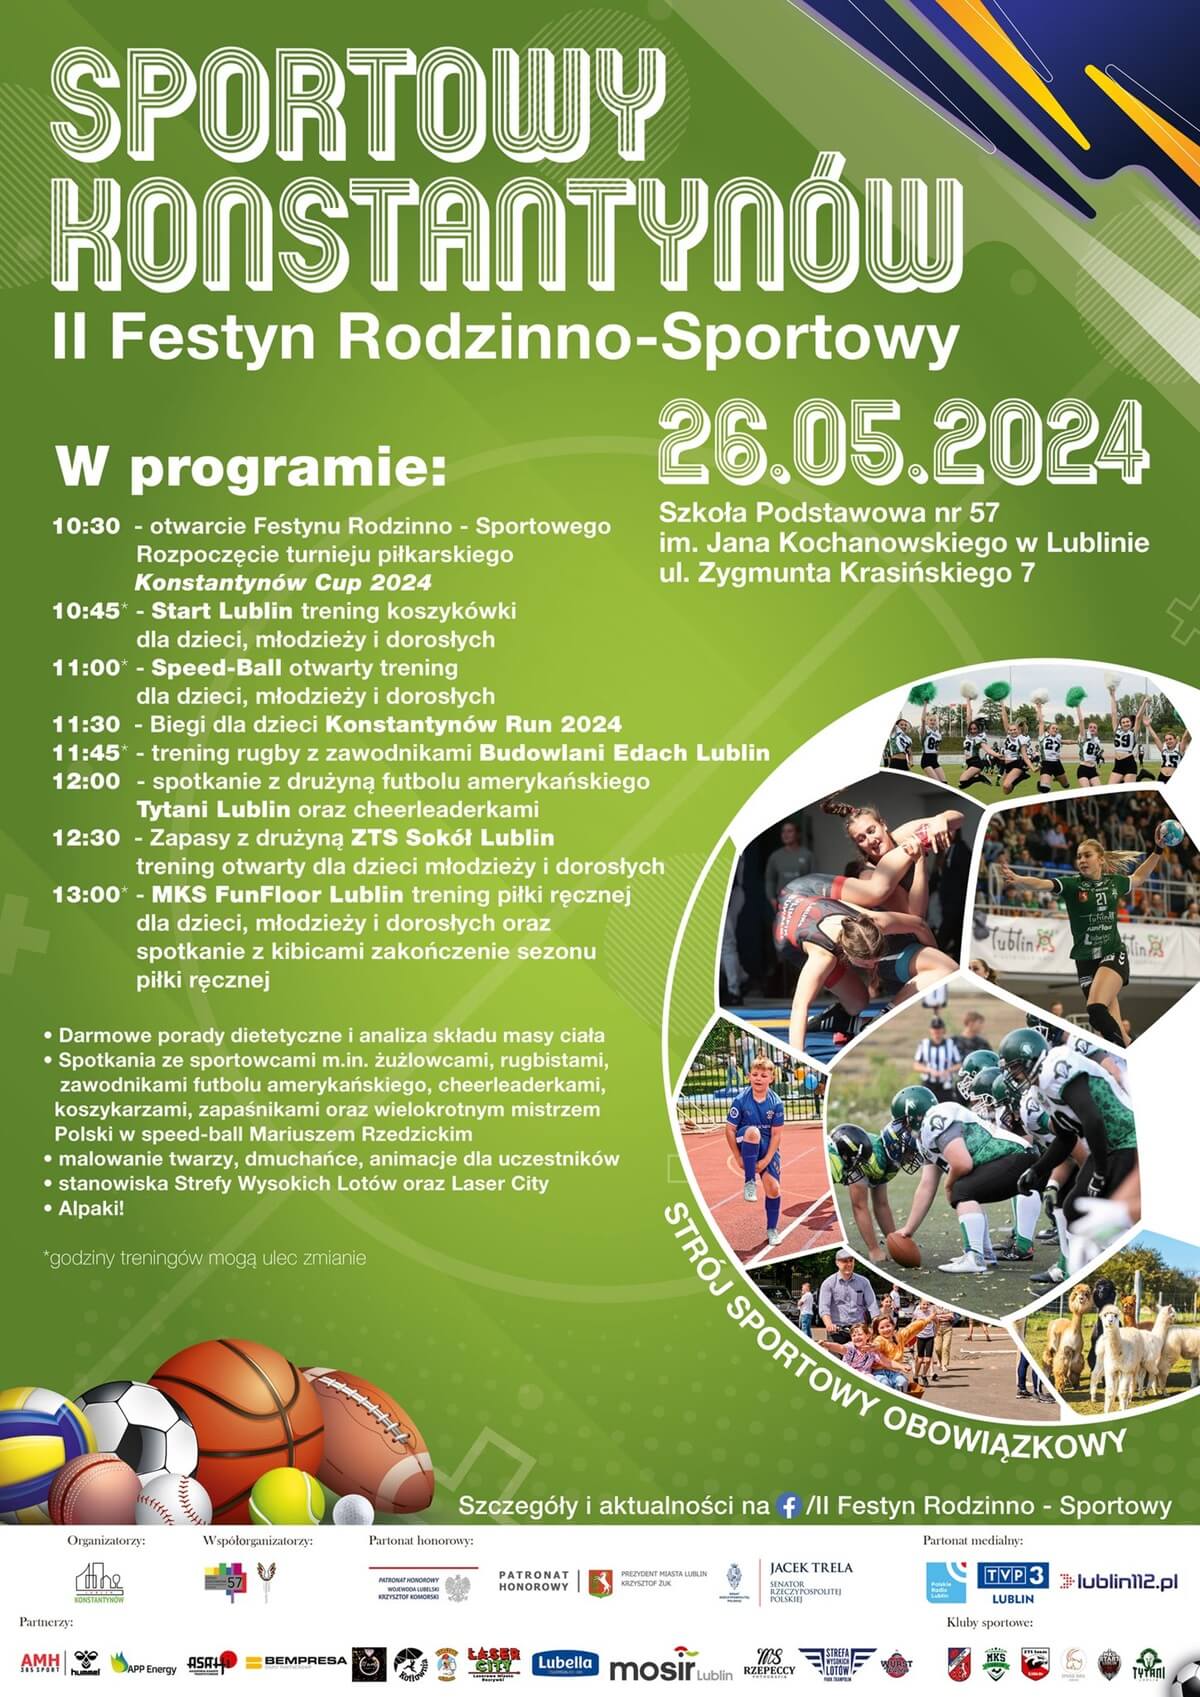 Sportowy Konstantynów - festyn rodzinno-sportowy 2024 - plakat